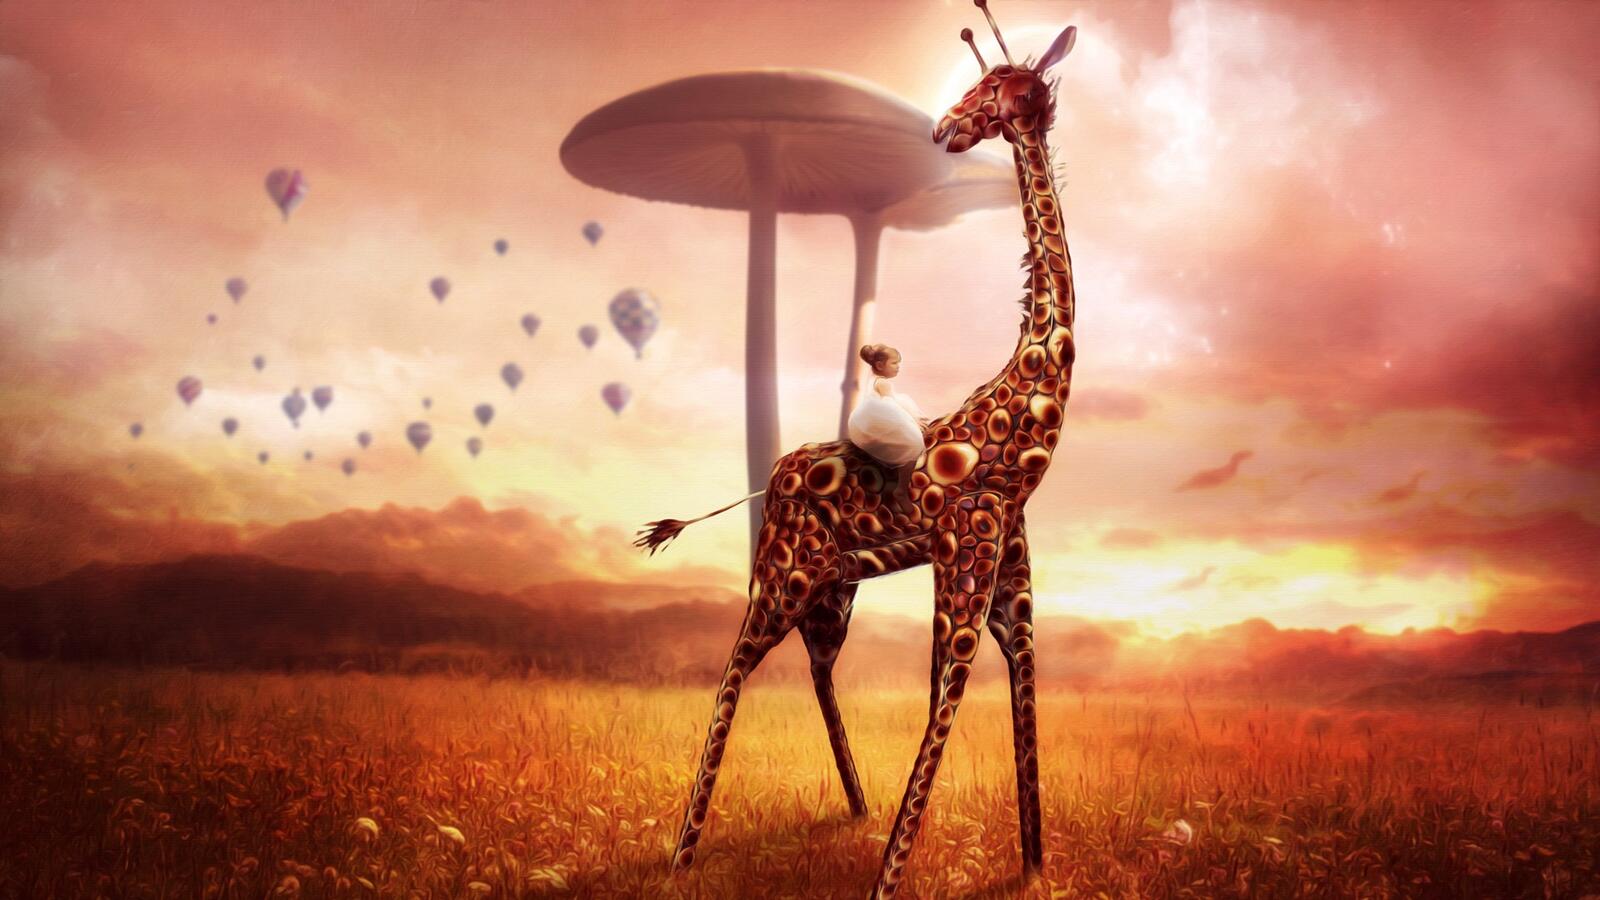 Wallpapers giraffe artist animals on the desktop